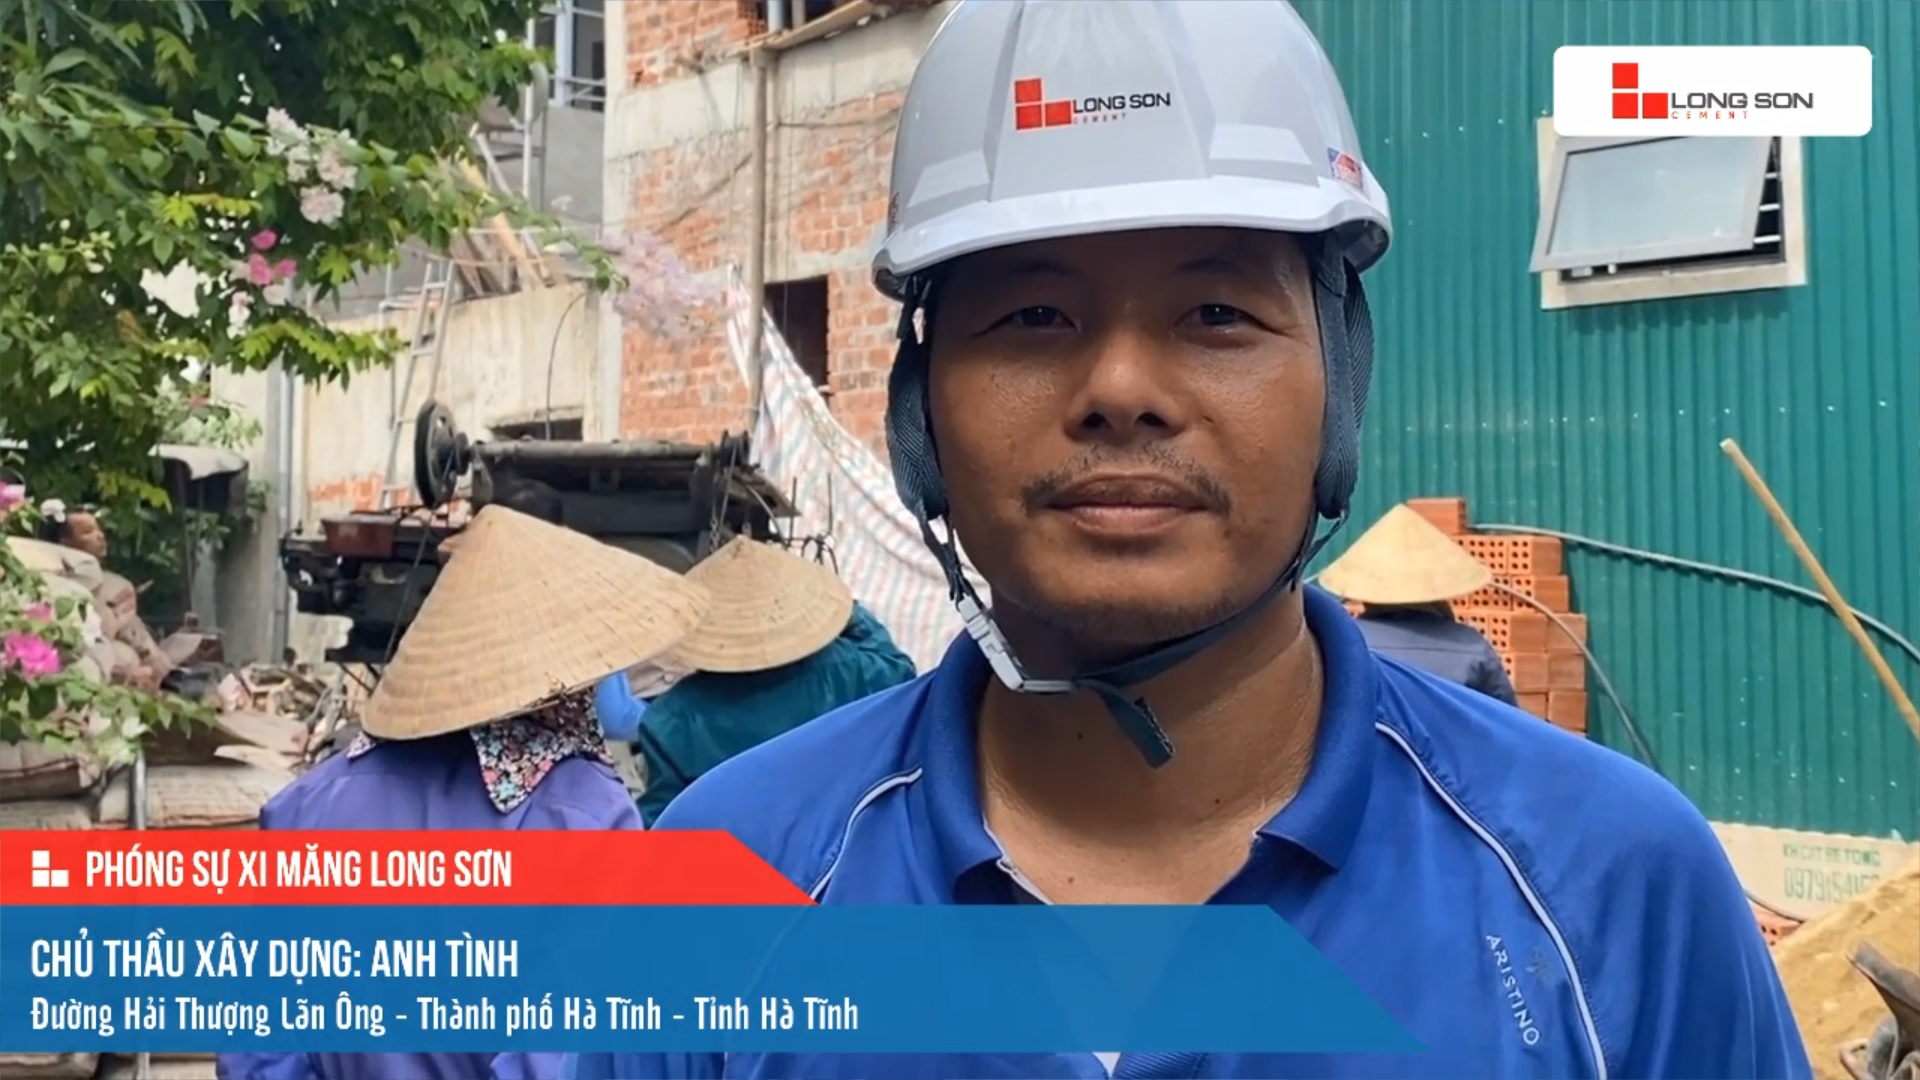 Phóng sự công trình sử dụng xi măng Long Sơn tại Hà Tĩnh ngày 16/08/2021